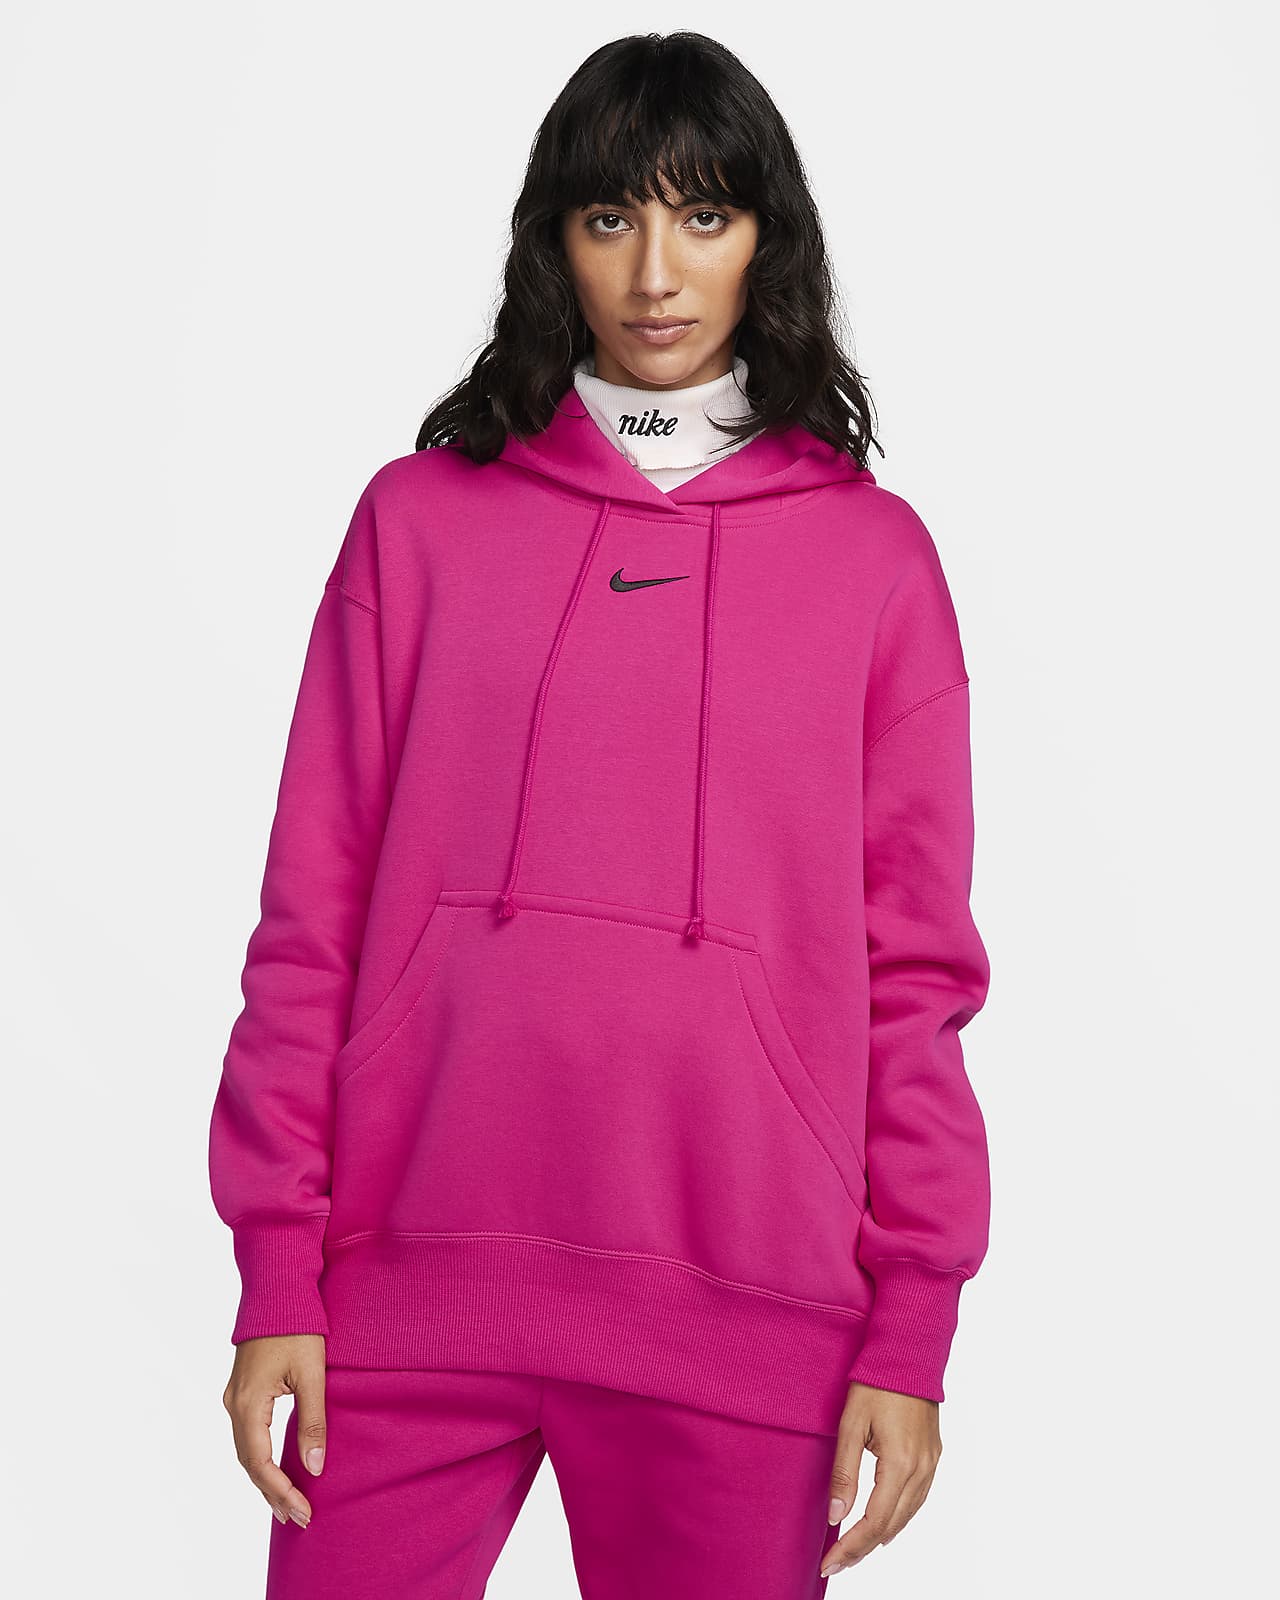 Γυναικείο φούτερ με κουκούλα σε φαρδιά γραμμή Nike Sportswear Phoenix